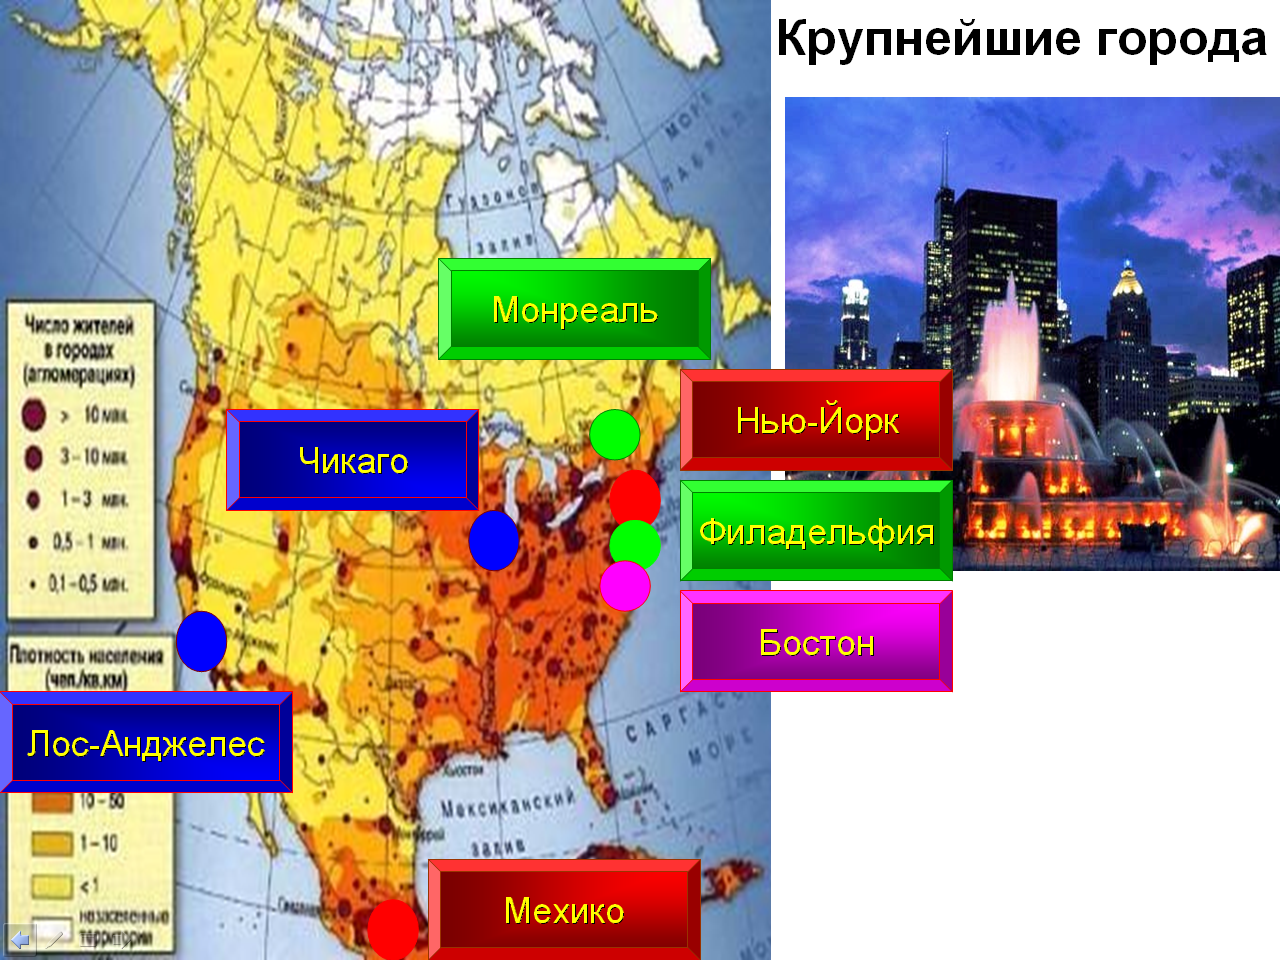 Конспект урока географии “Население и страны Северной Америки”. (7 класс)